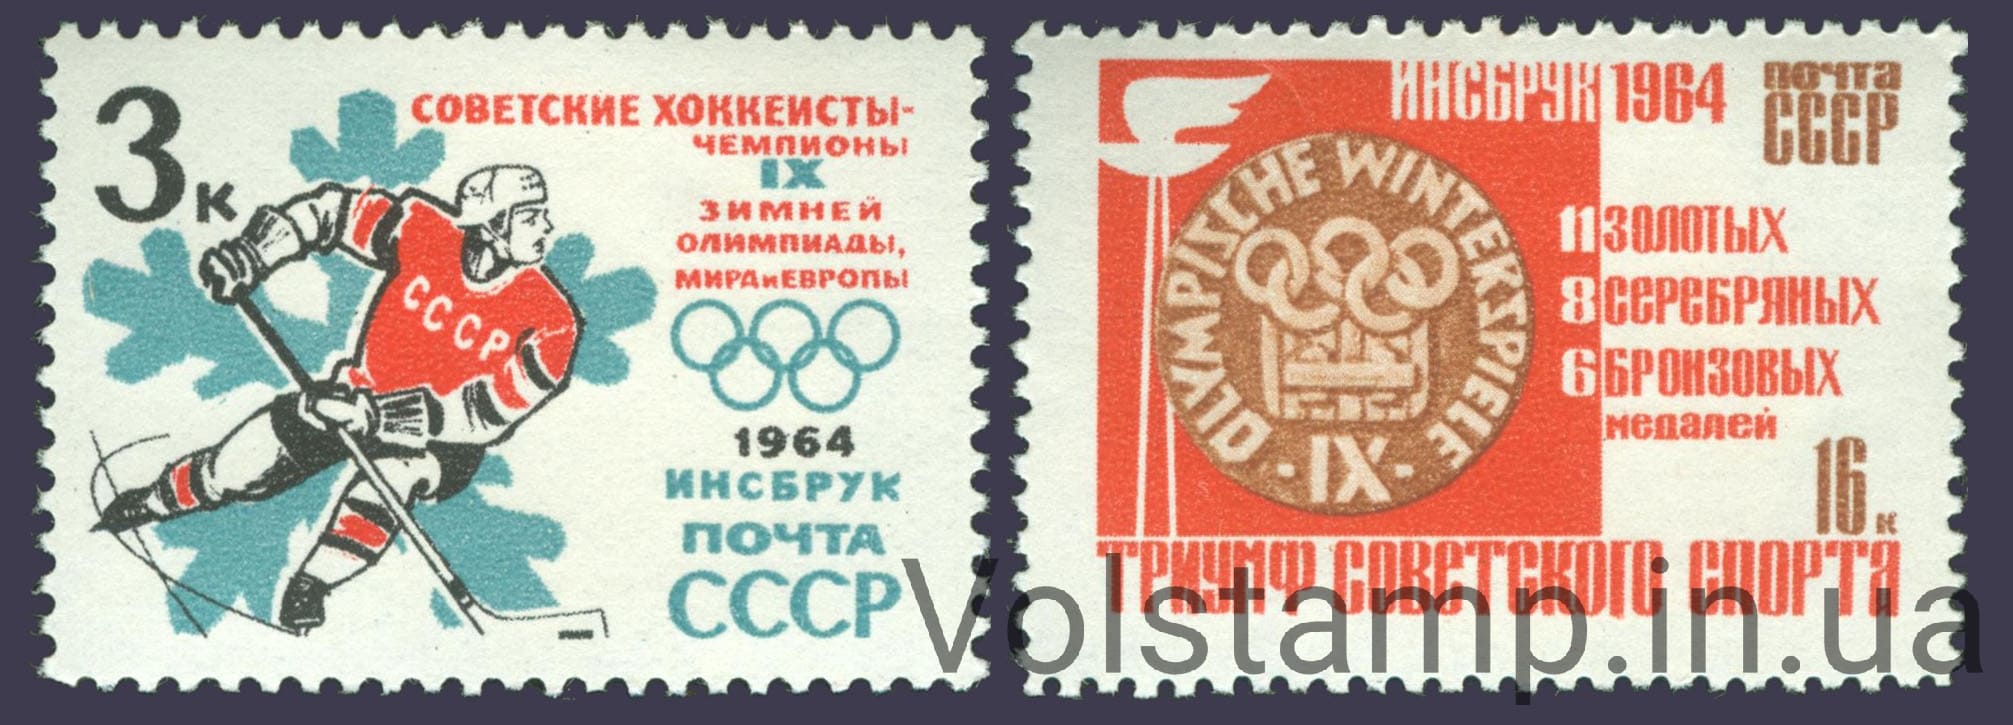 1964 серия марок Победы советских спортсменов на IX зимних Олимпийских играх №2920-2921